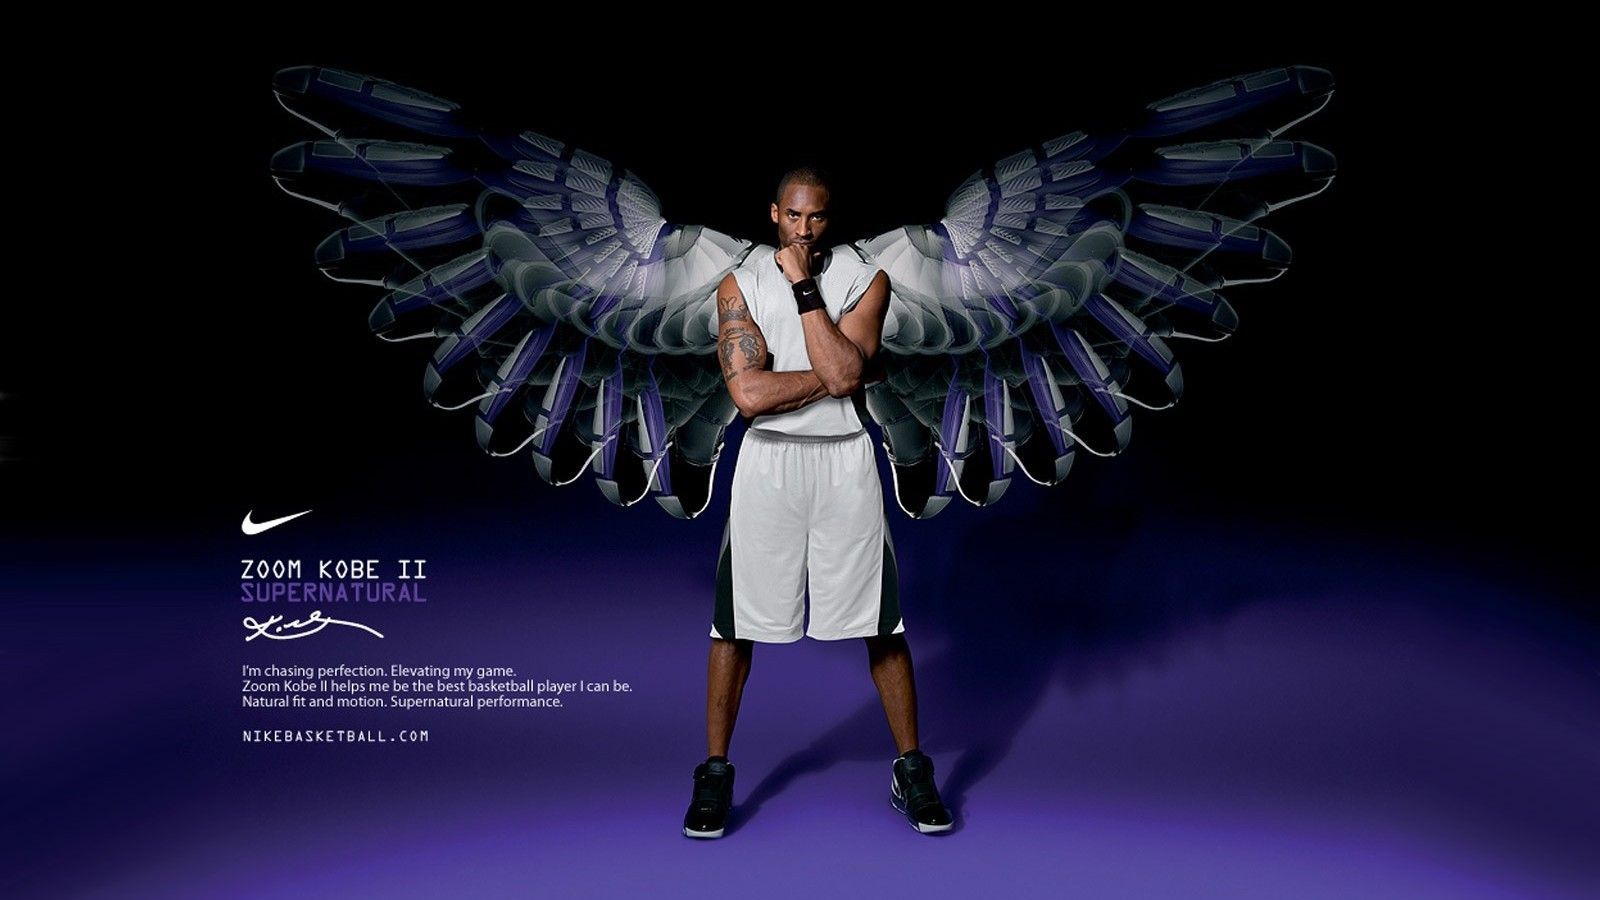 Kobe Bryant Nike Shoes Wallpaper HD 1600x1200PX Wallpaper Nike Shoes Download. Kobe bryant, Kobe, Kobe bryant dunk